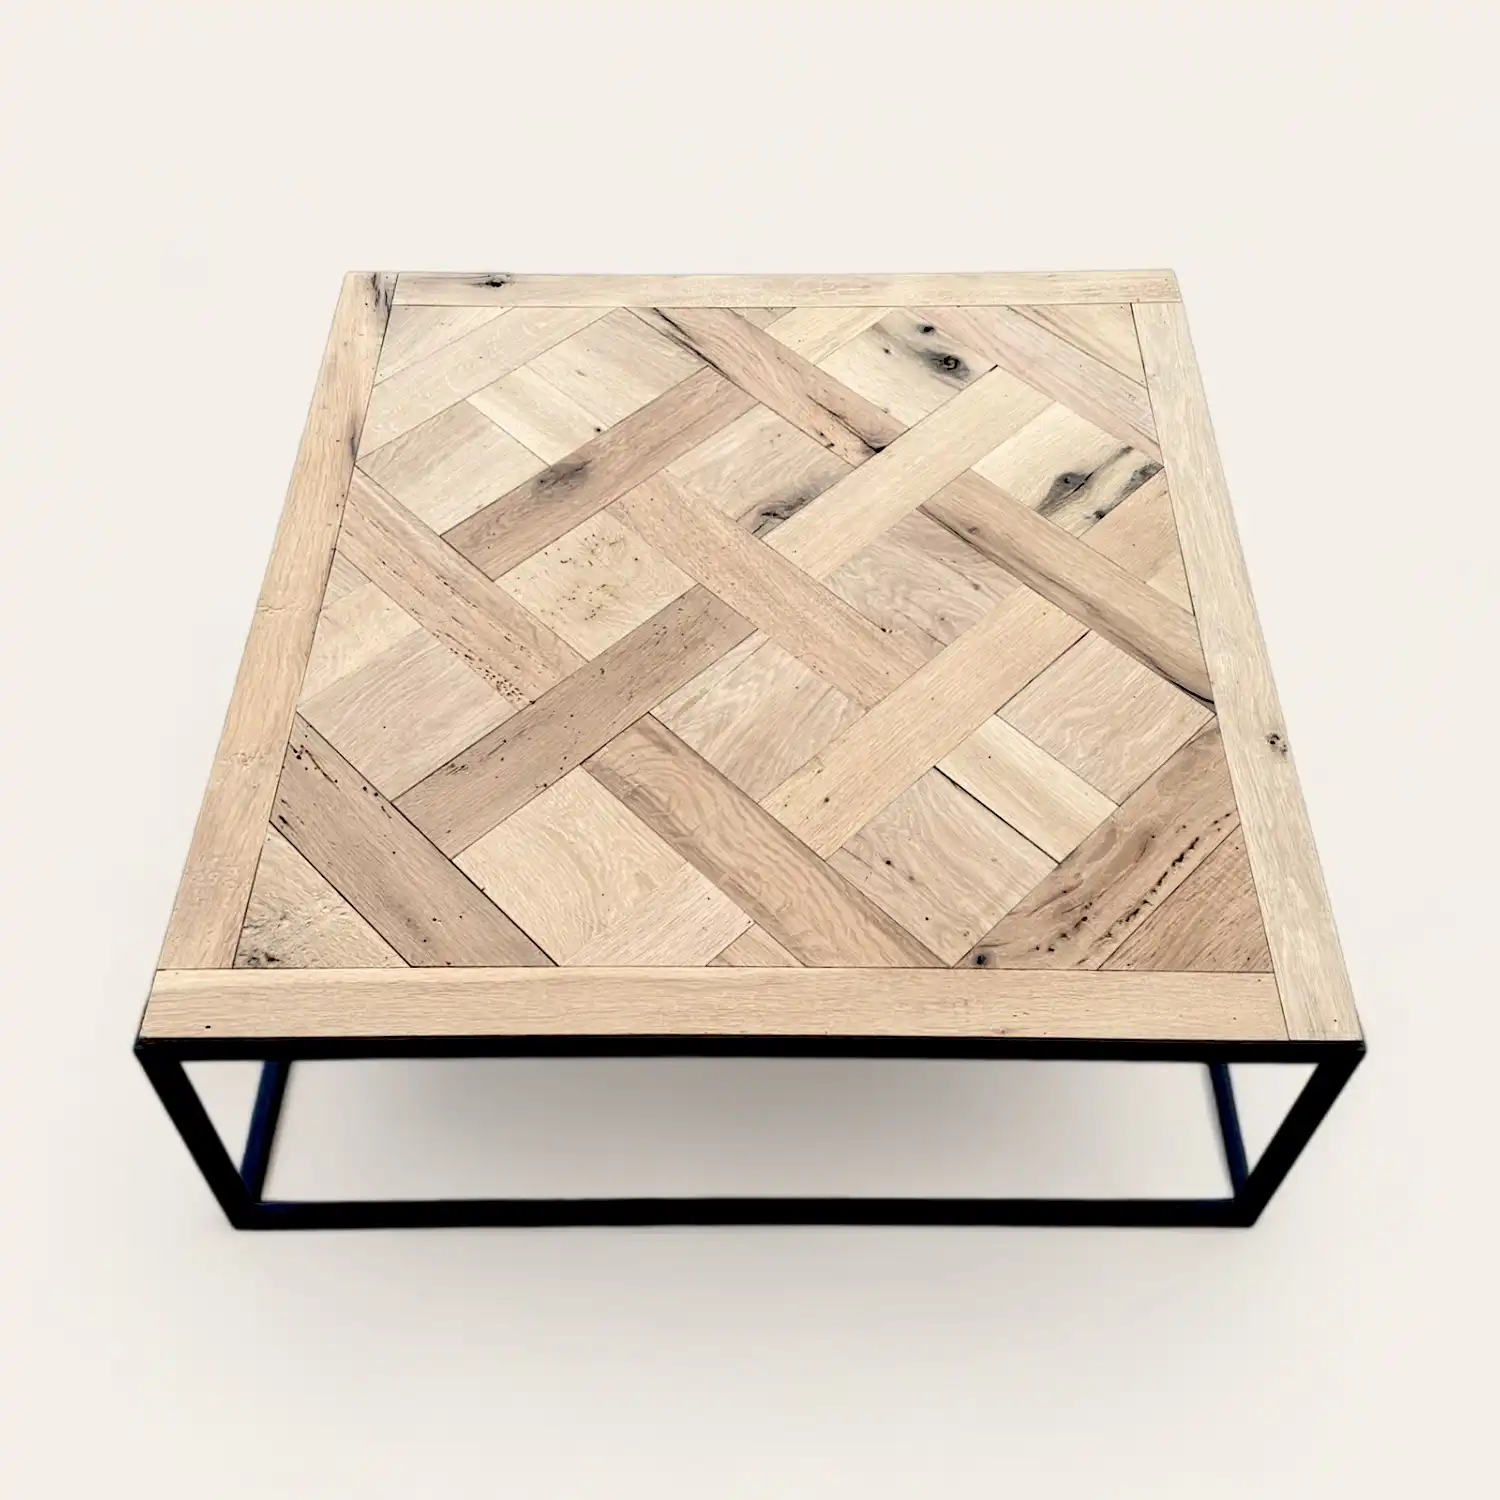  Une table basse style versailles en bois ancien avec un cadre noir. 